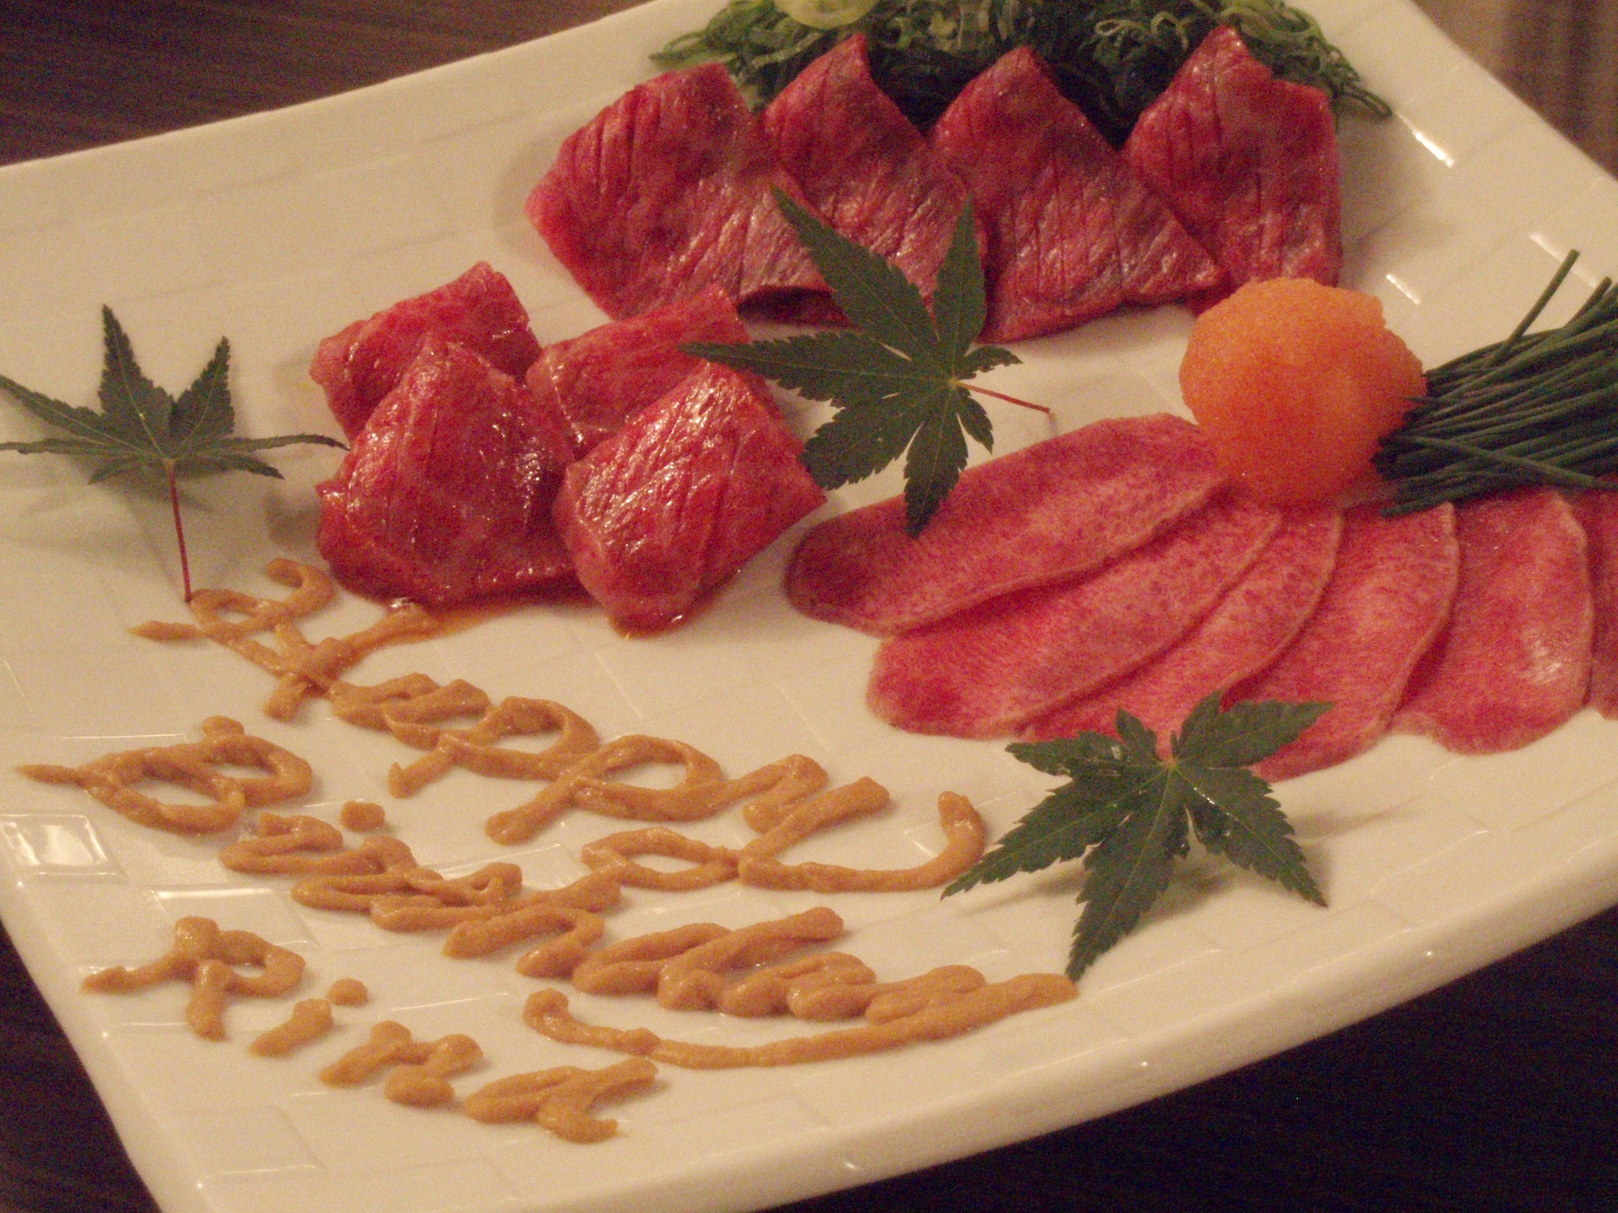 東京随一の牛割烹「金舌」で日本一のレバーを！アンジャッシュ渡部ご用達の肉の名店徹底解剖